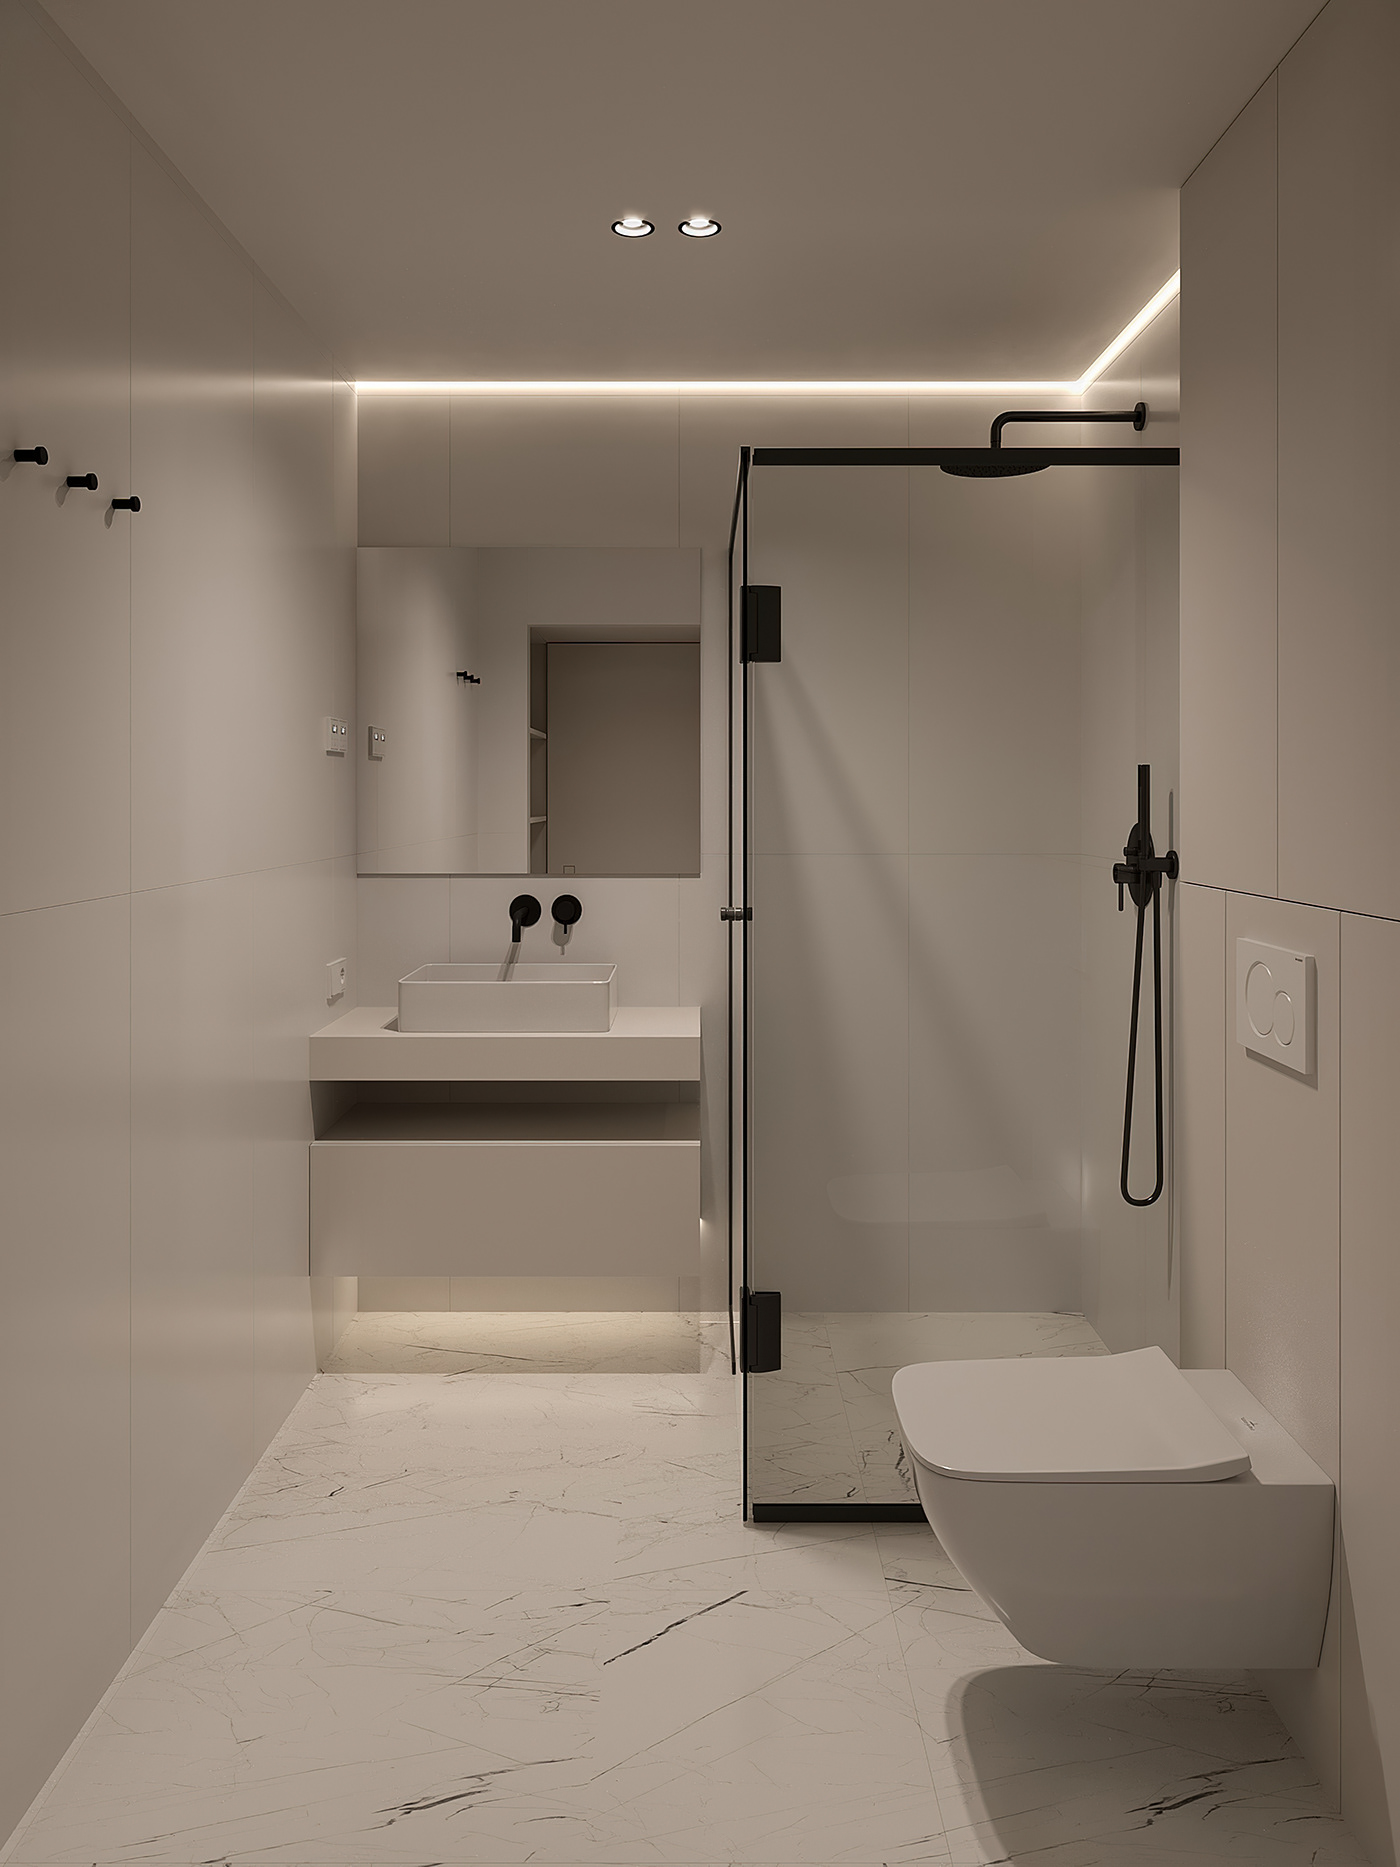 bathroom design 3ds max interior design  Render